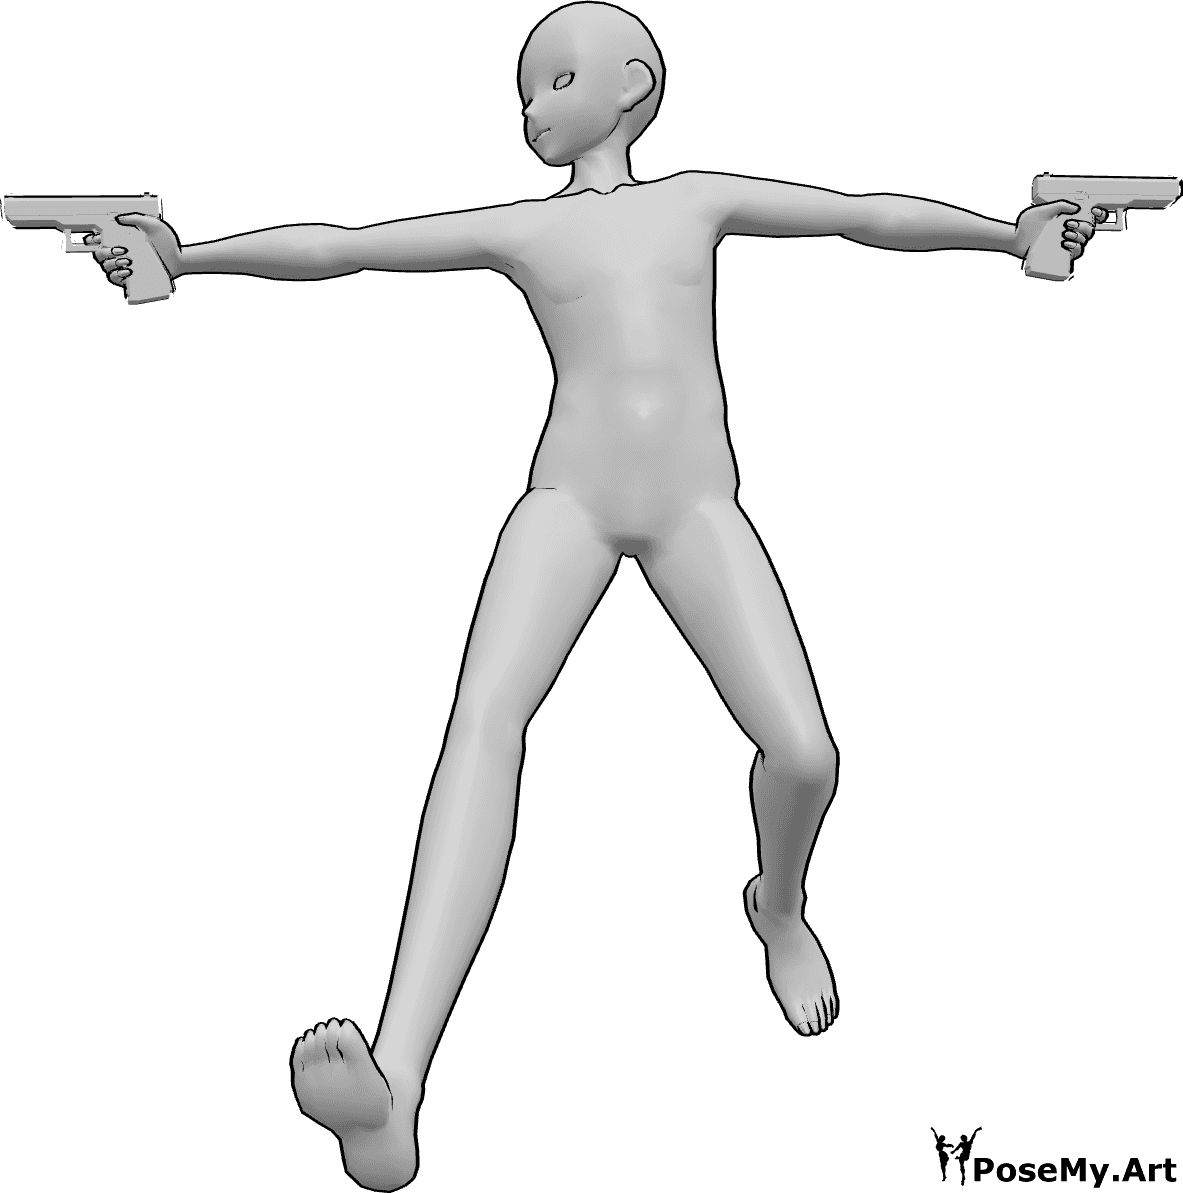 Referencia de poses- Apuntar dos armas posar - Hombre anime está saltando alto, sosteniendo armas y apuntando en ambas direcciones